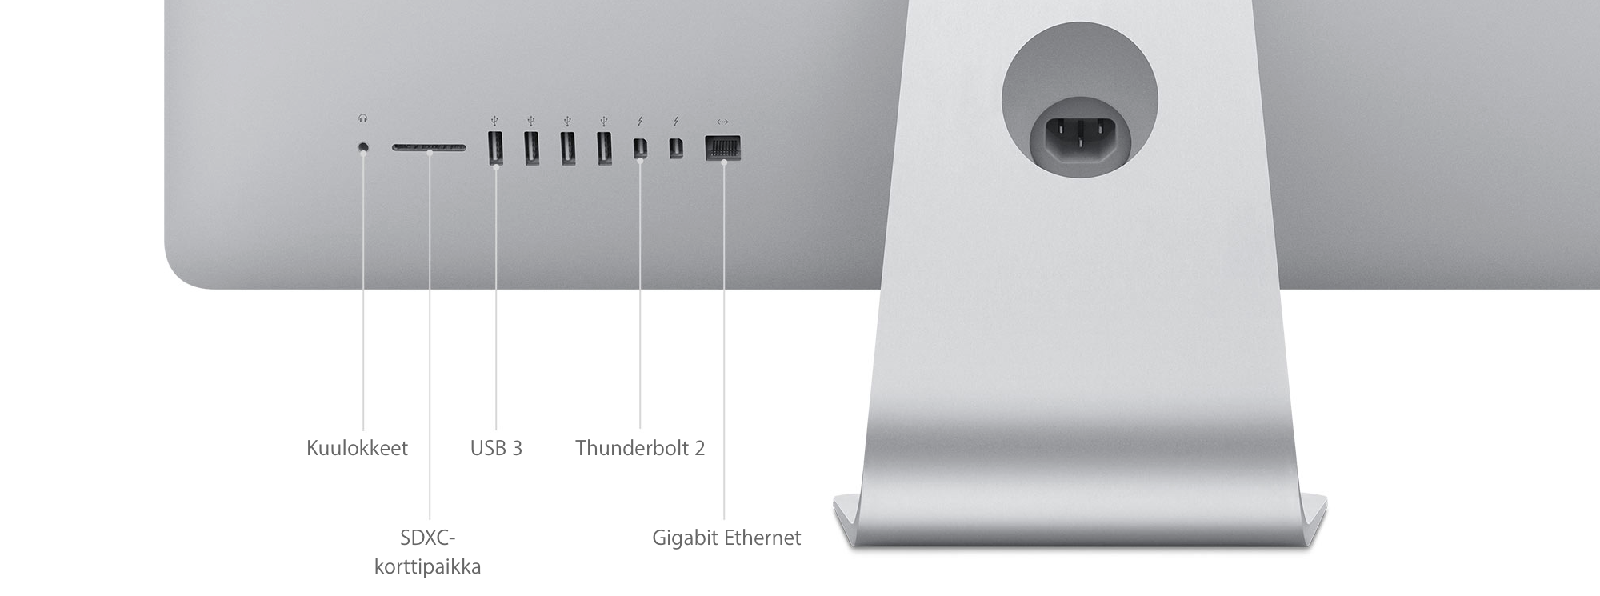 iMac (Retina 5K, 27-tuumainen, loppuvuosi 2015) - Tekniset tiedot (FI)